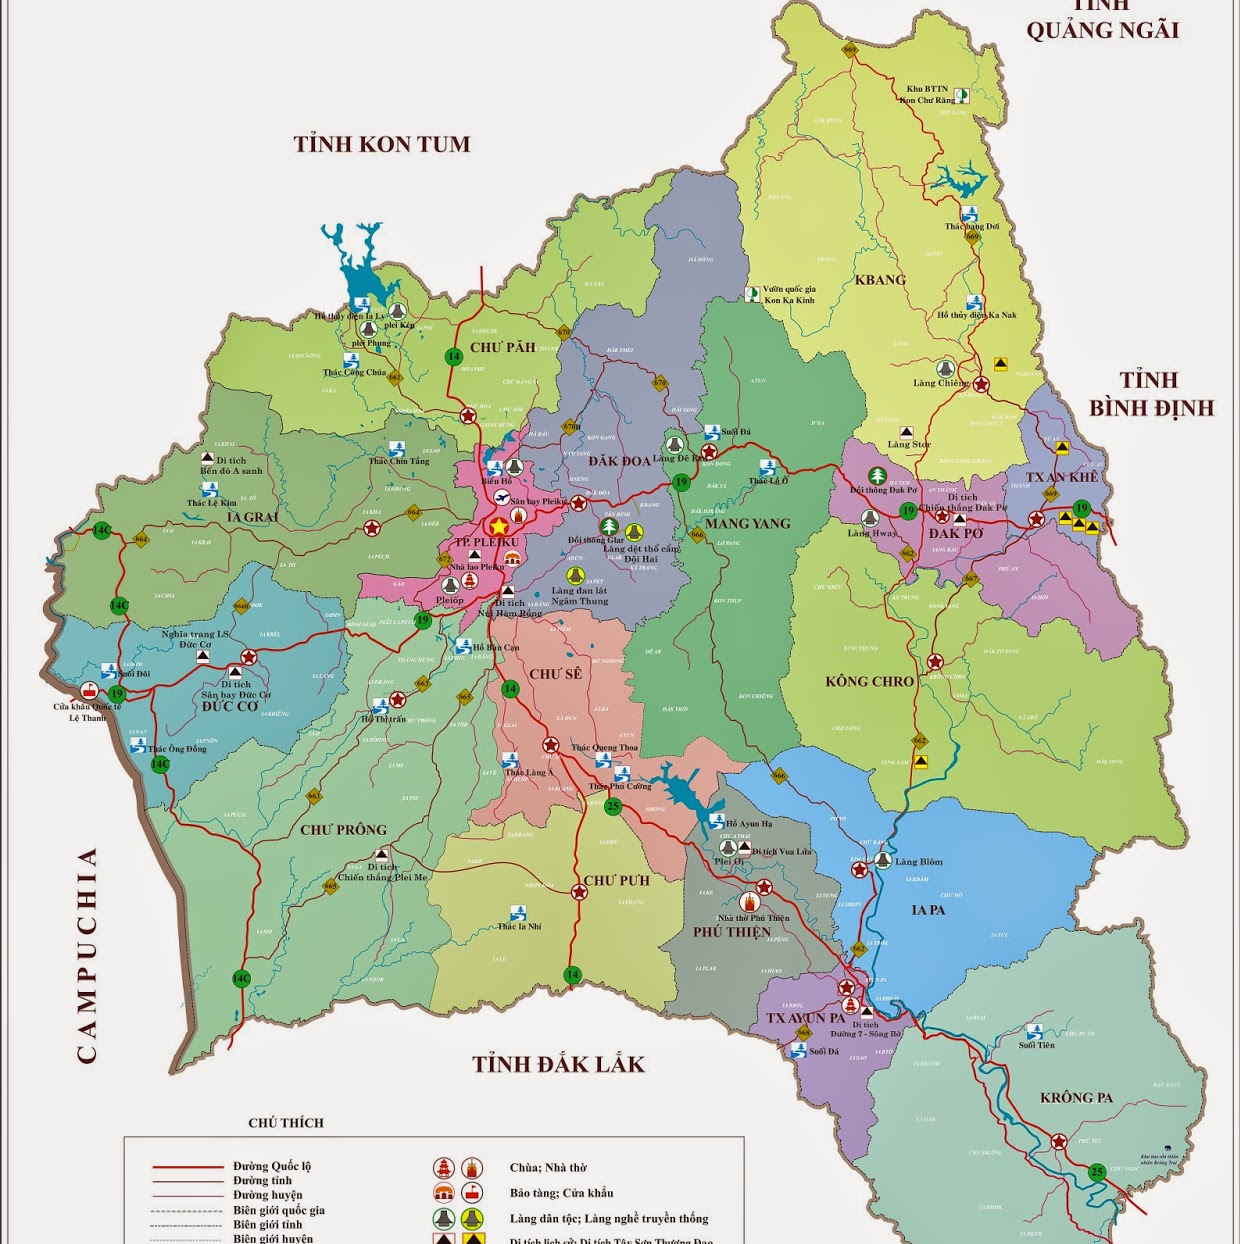 Bản đồ Gia Lai 2024: Khám phá tương lai của Gia Lai thông qua bản đồ rực rỡ! Cập nhật đầy đủ thông tin về công trình, địa điểm du lịch, cơ sở hạ tầng mới và nhiều hơn nữa. Đừng bỏ lỡ cơ hội để thưởng thức một trong những điểm đến phổ biến nhất của Việt Nam.